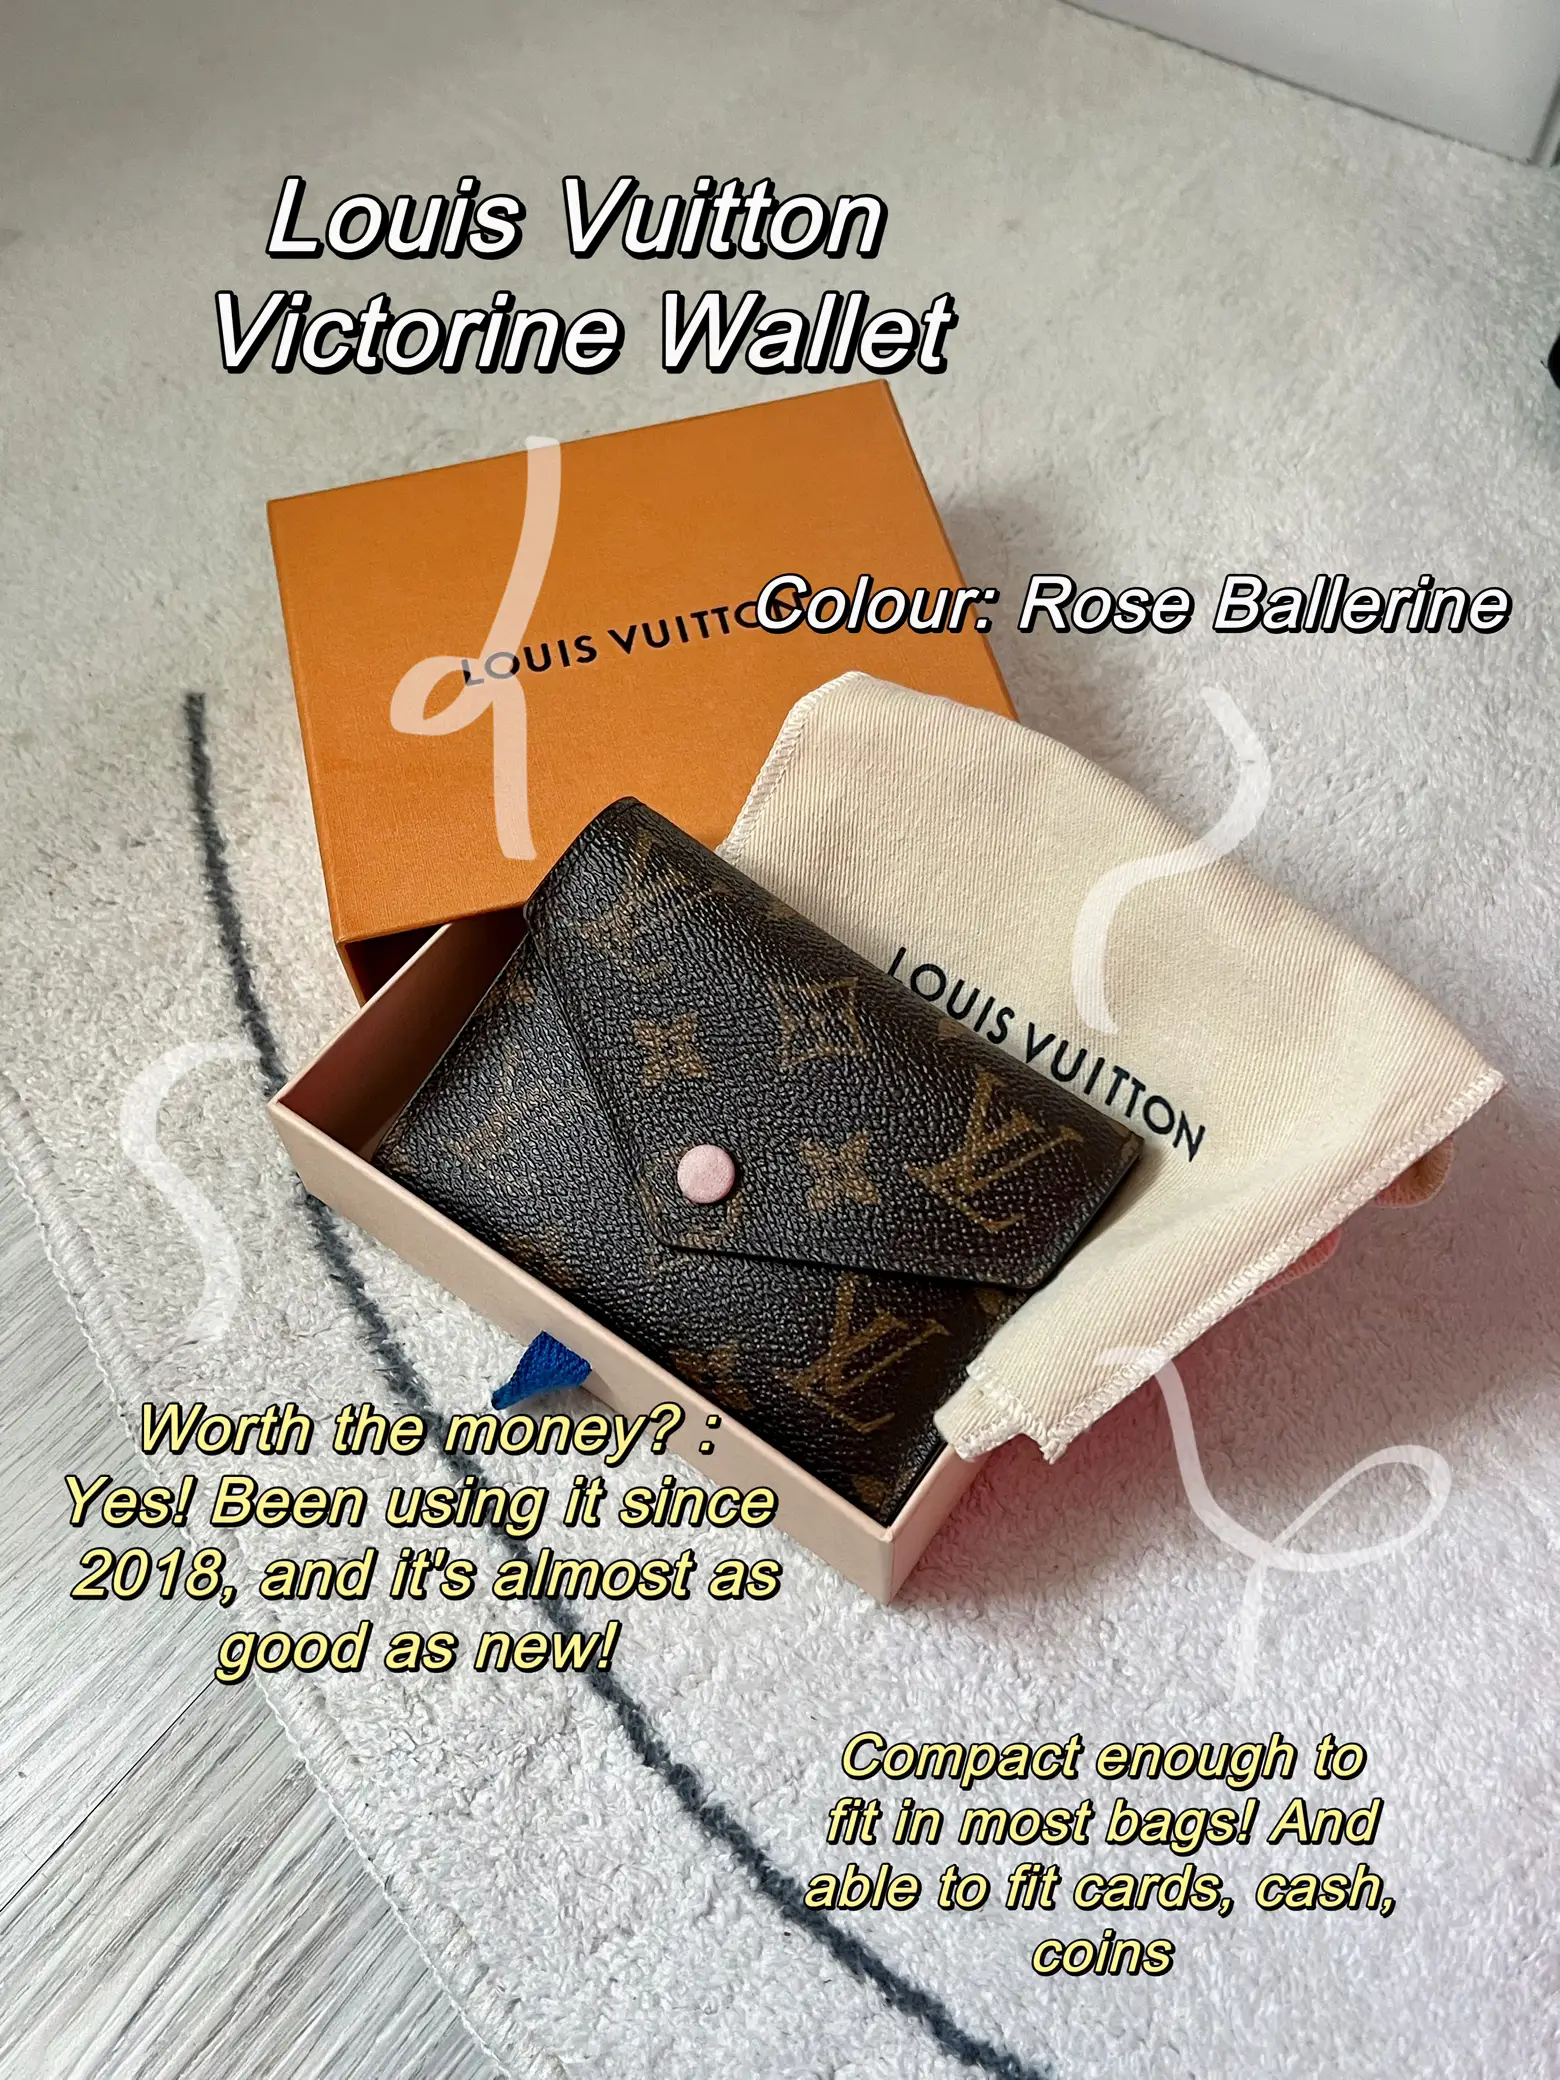 Louis Vuitton Victorine Wallet Review 2017 